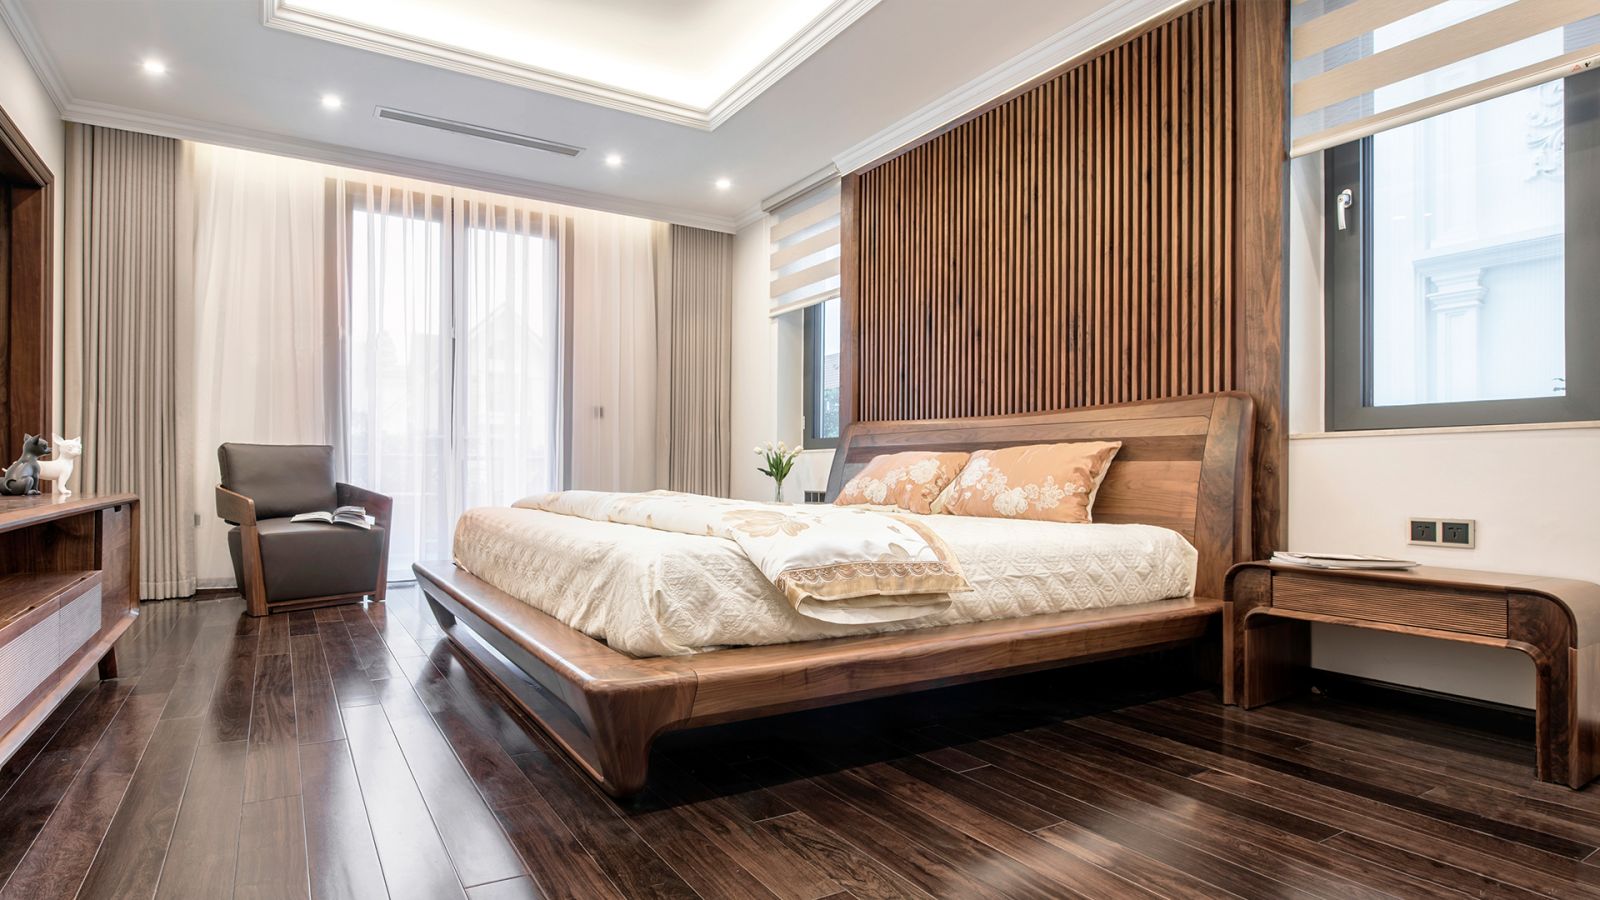 Phòng ngủ hiện đại với gam màu mông mơ dành cho những người trẻ trung